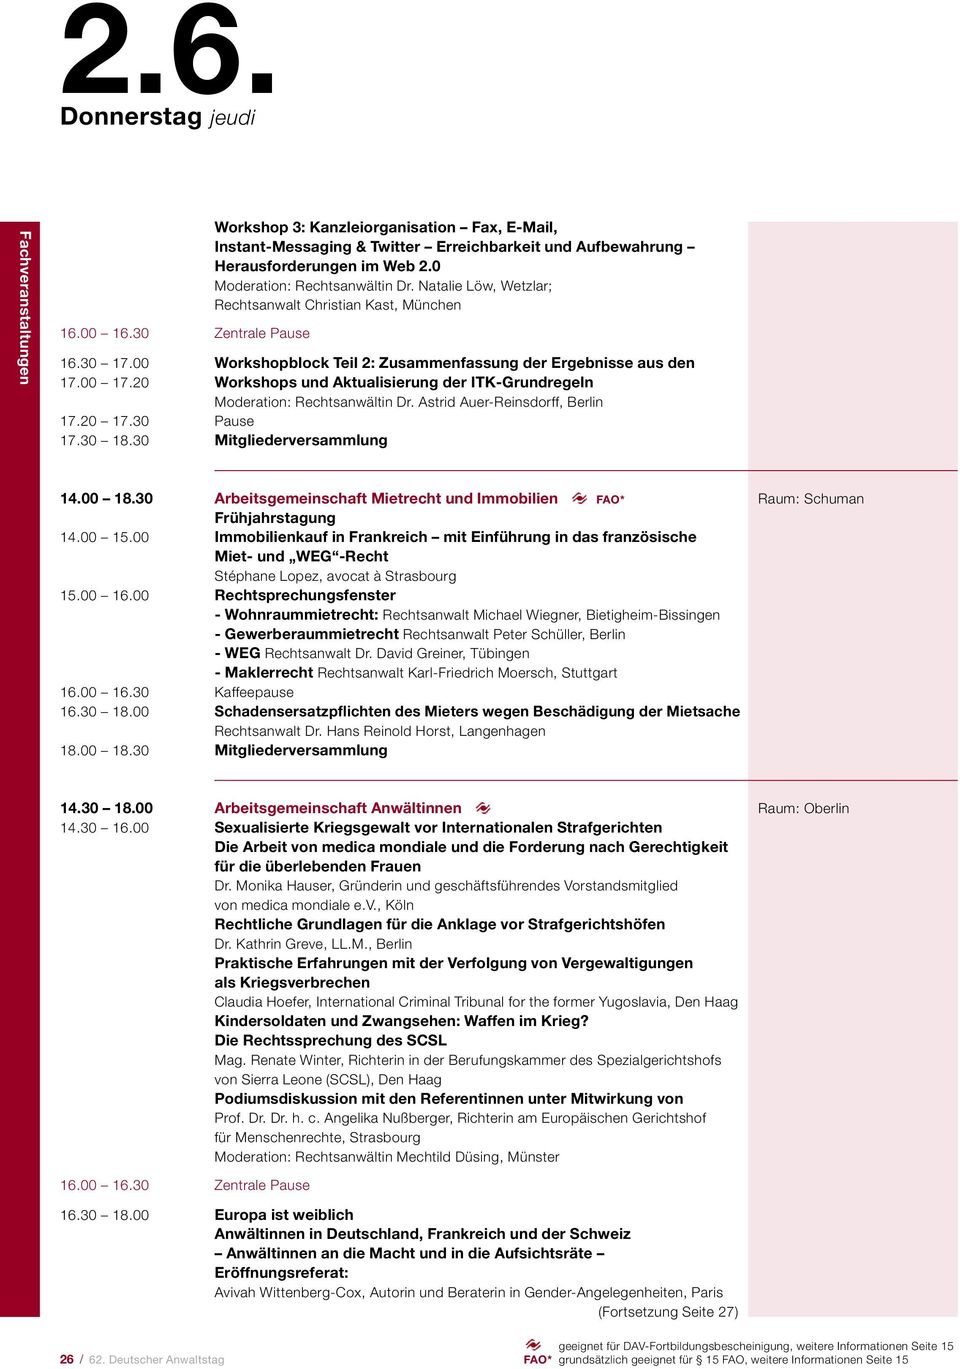 20 Workshops und Aktualisierung der ITK-Grundregeln Moderation: Rechtsanwältin Dr. Astrid Auer-Reinsdorff, Berlin 17.20 17.30 Pause 17.30 18.30 Mitgliederversammlung 14.00 18.